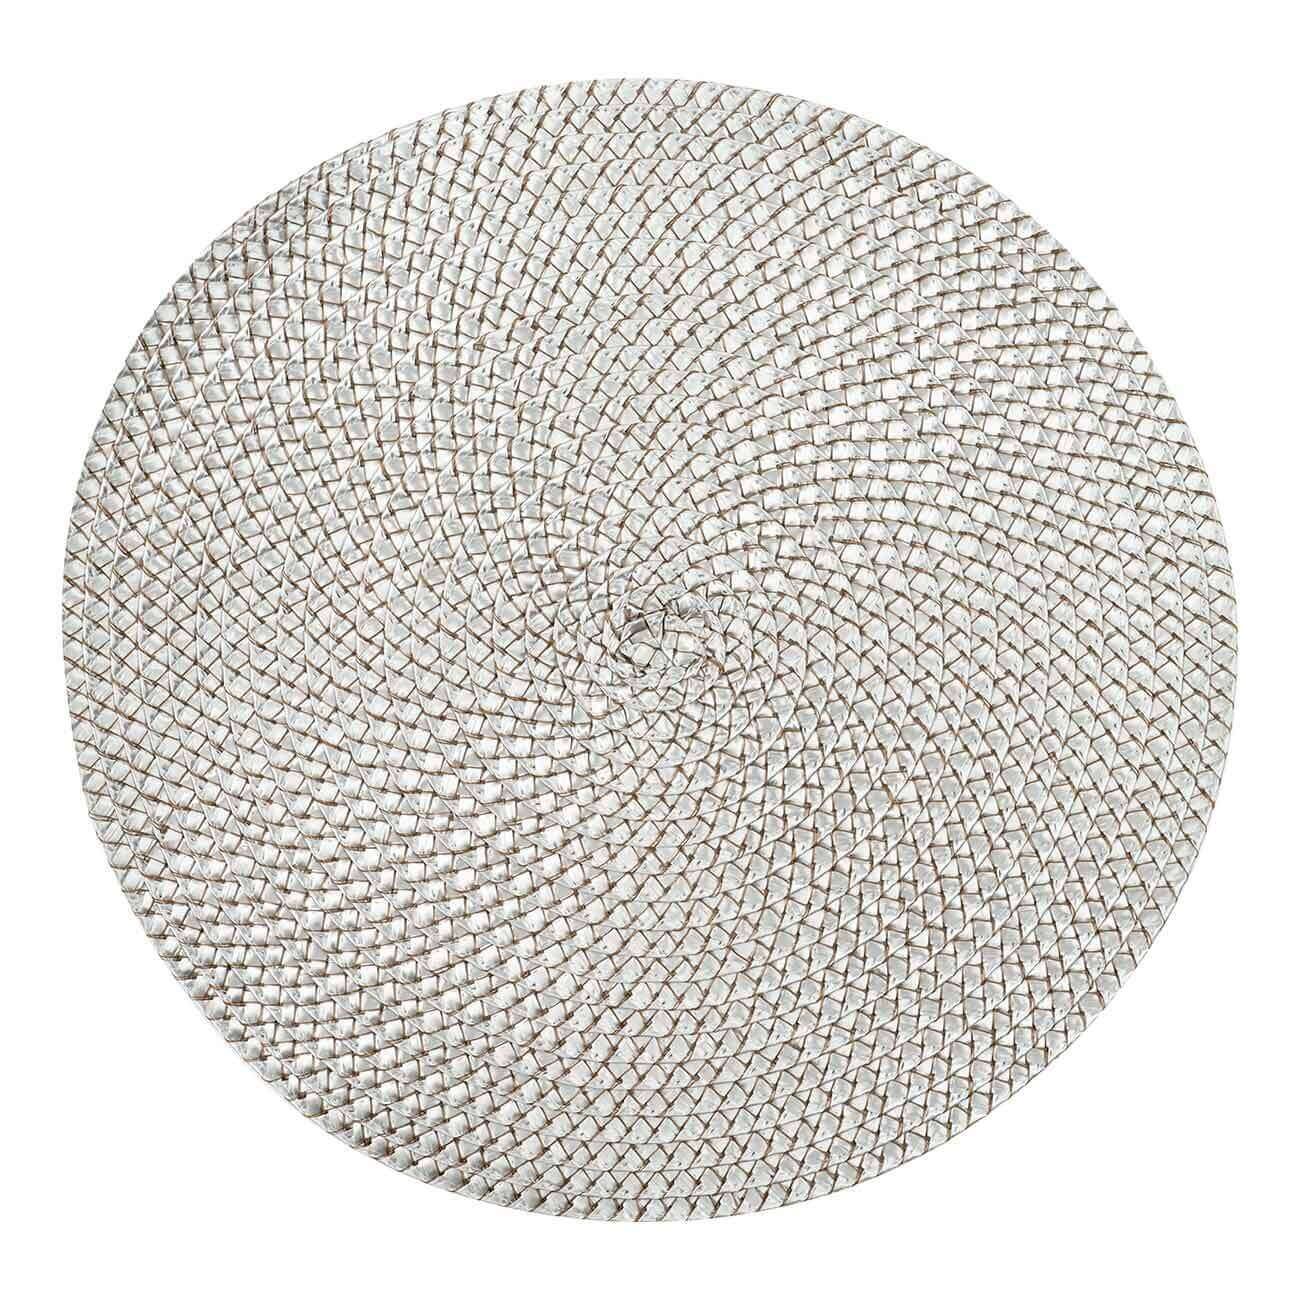 Салфетка под приборы, 38 см, полипропилен/ПЭТ, круглая, серебристая, Circle braid салфетка под приборы 38 см полипропилен пэт круглая темно лиловая circle